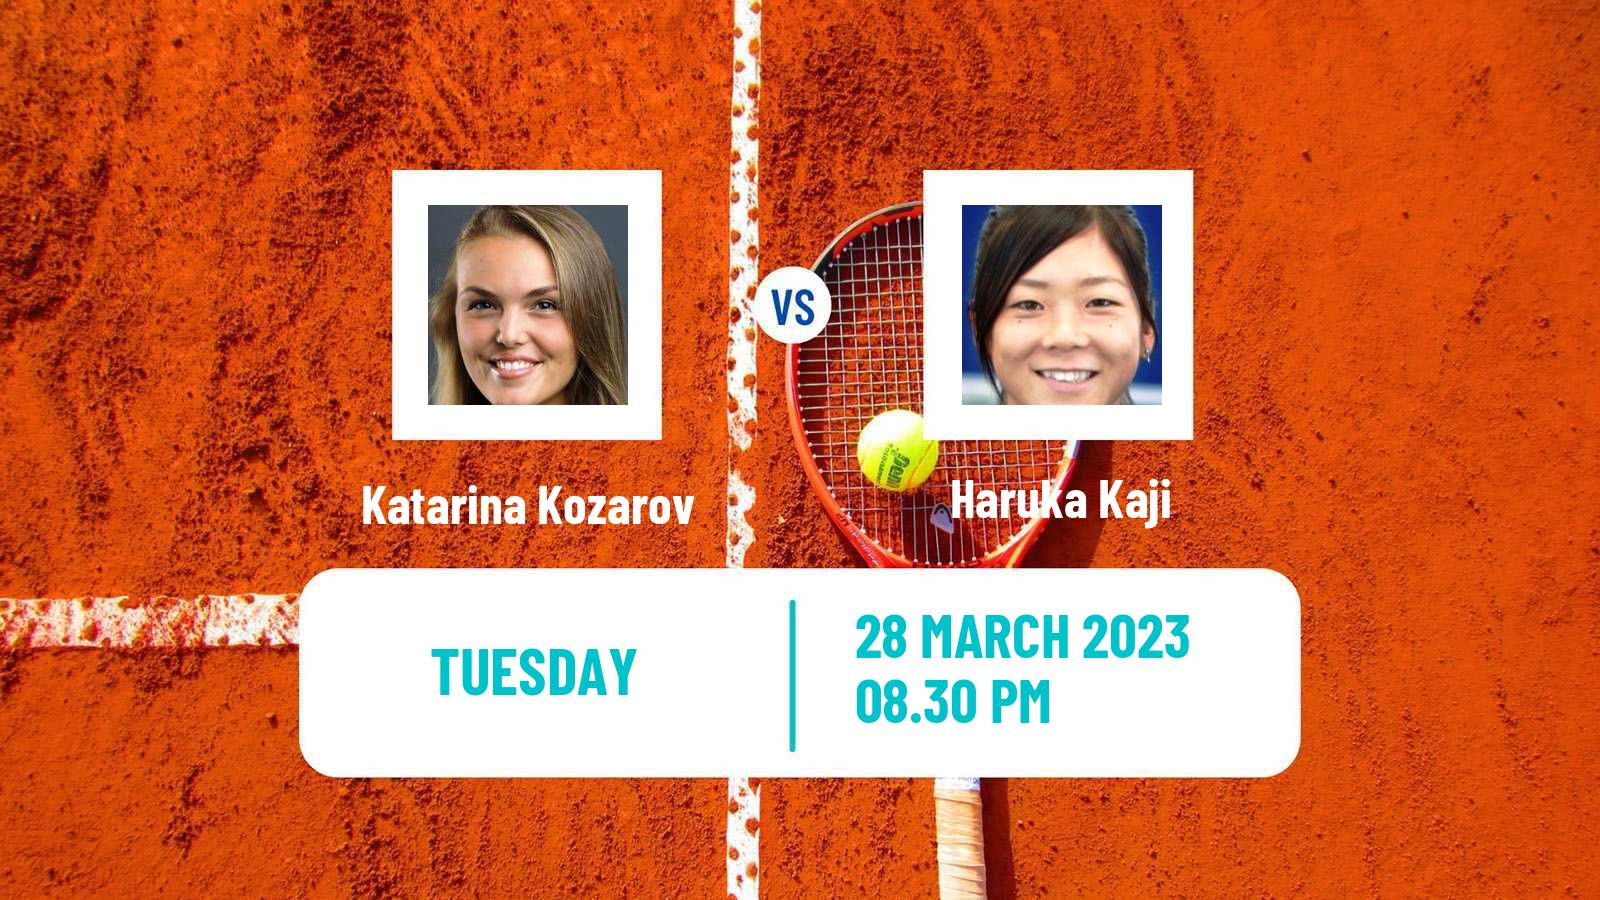 Tennis ITF Tournaments Katarina Kozarov - Haruka Kaji